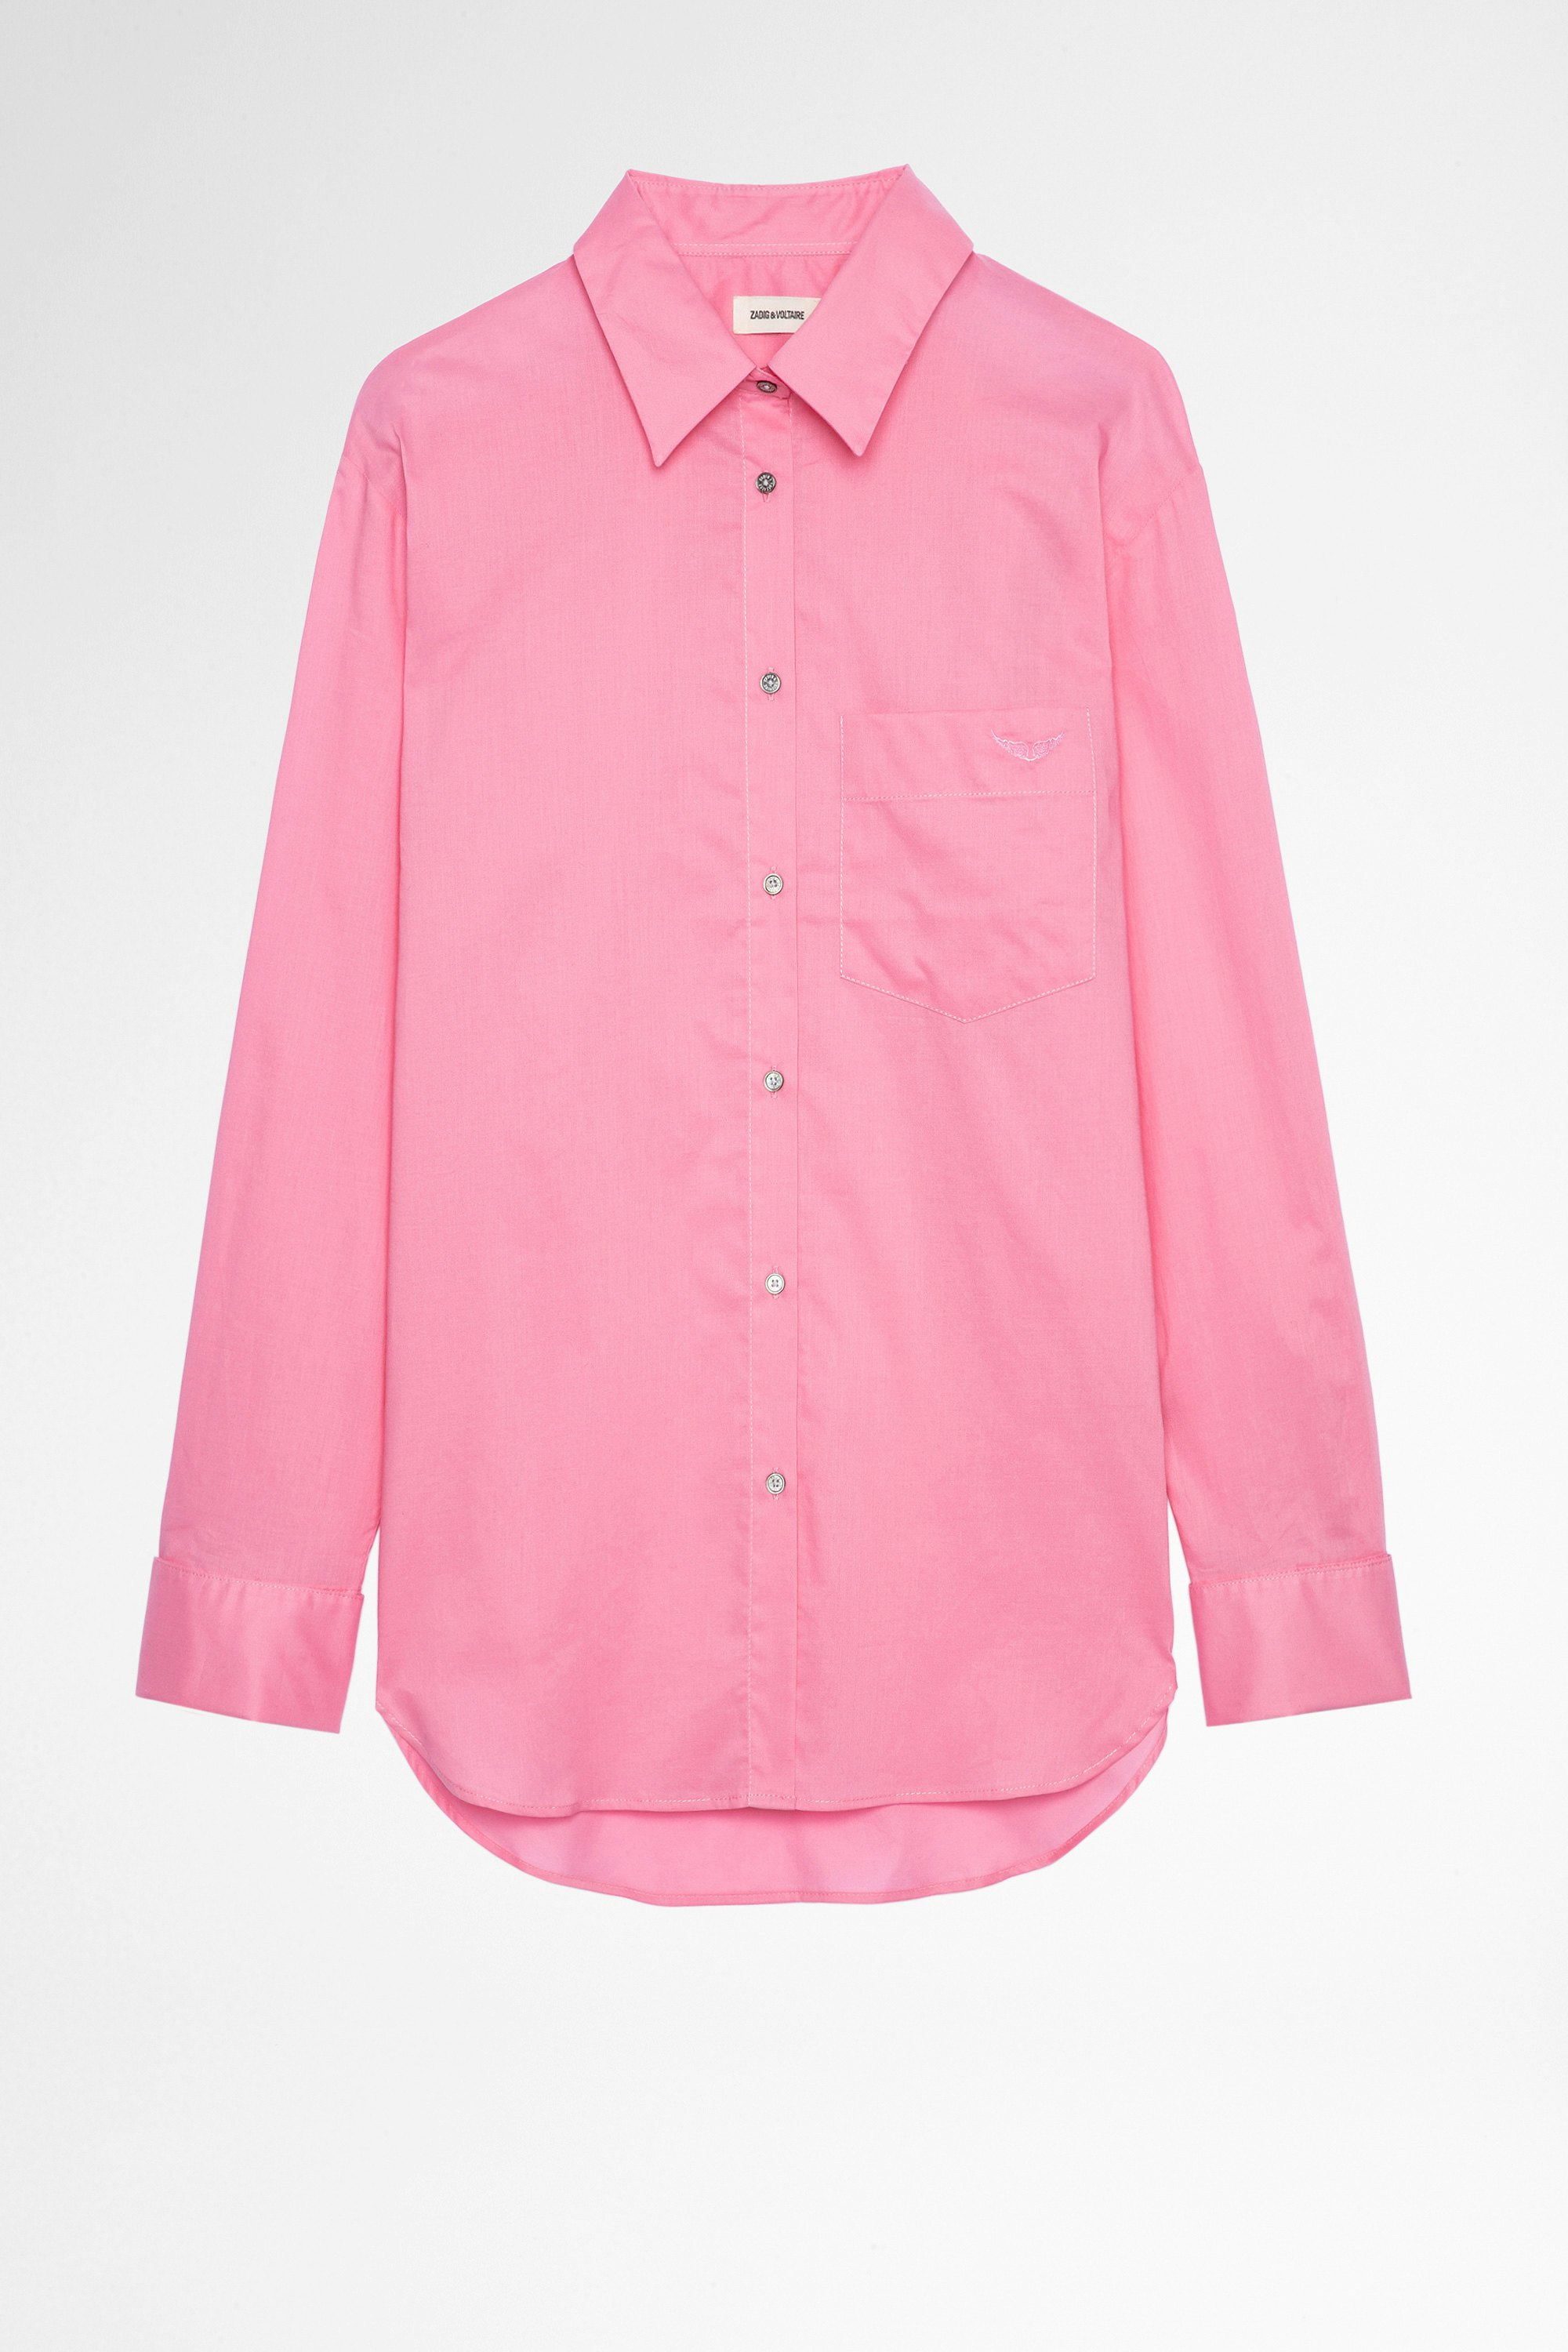 Camisa Morning Camisa de mujer de algodón rosa. Confeccionado con fibras procedentes de la agricultura ecológica.